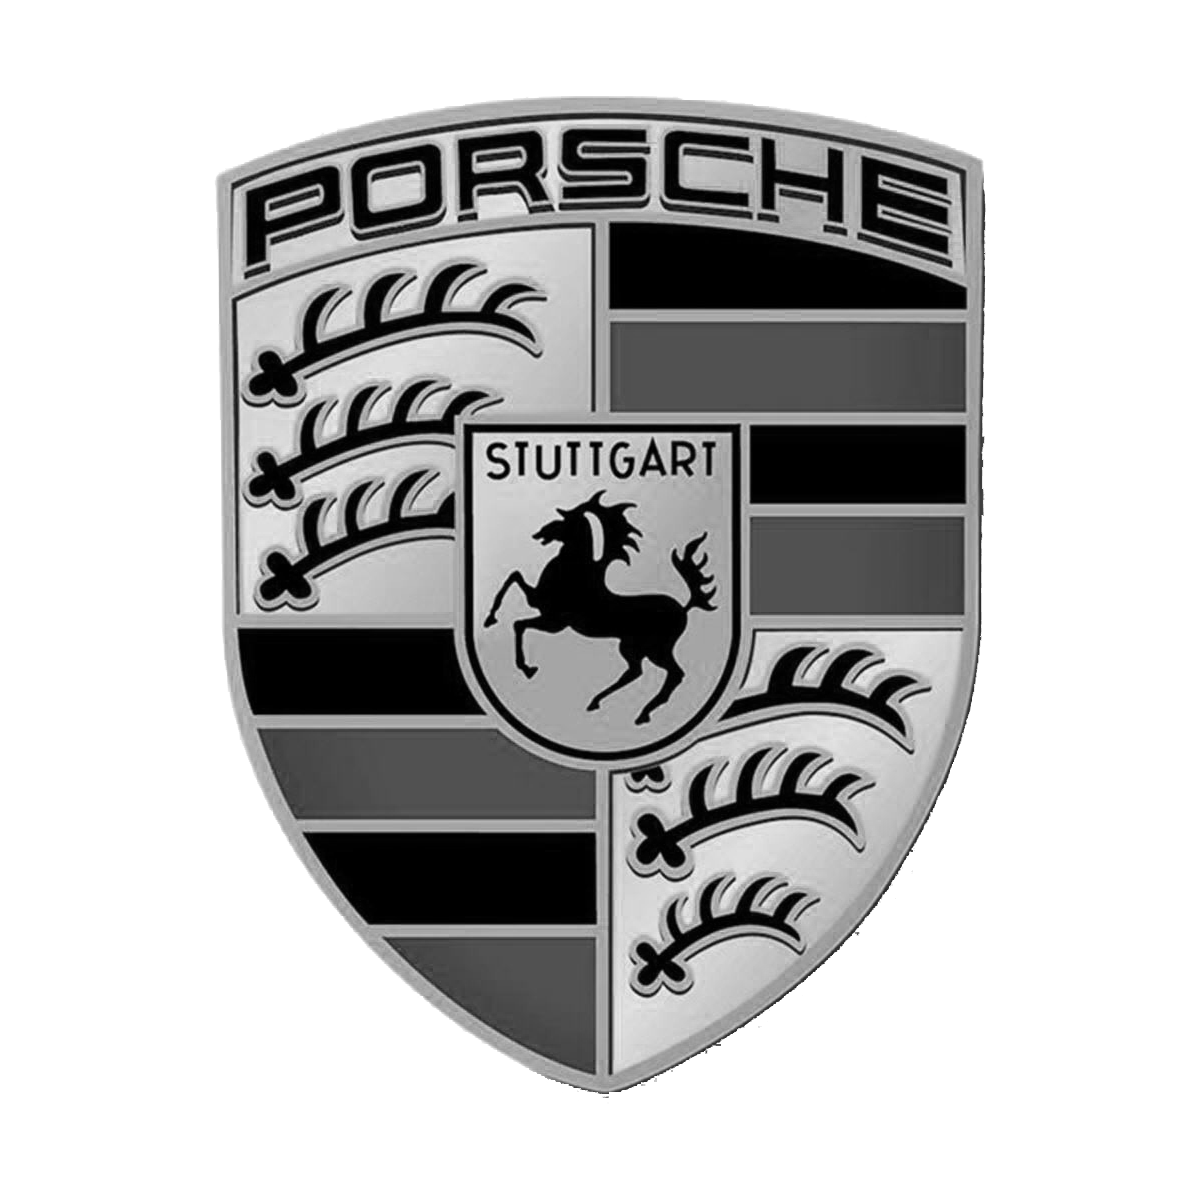 Porsche Logo PNG Picture